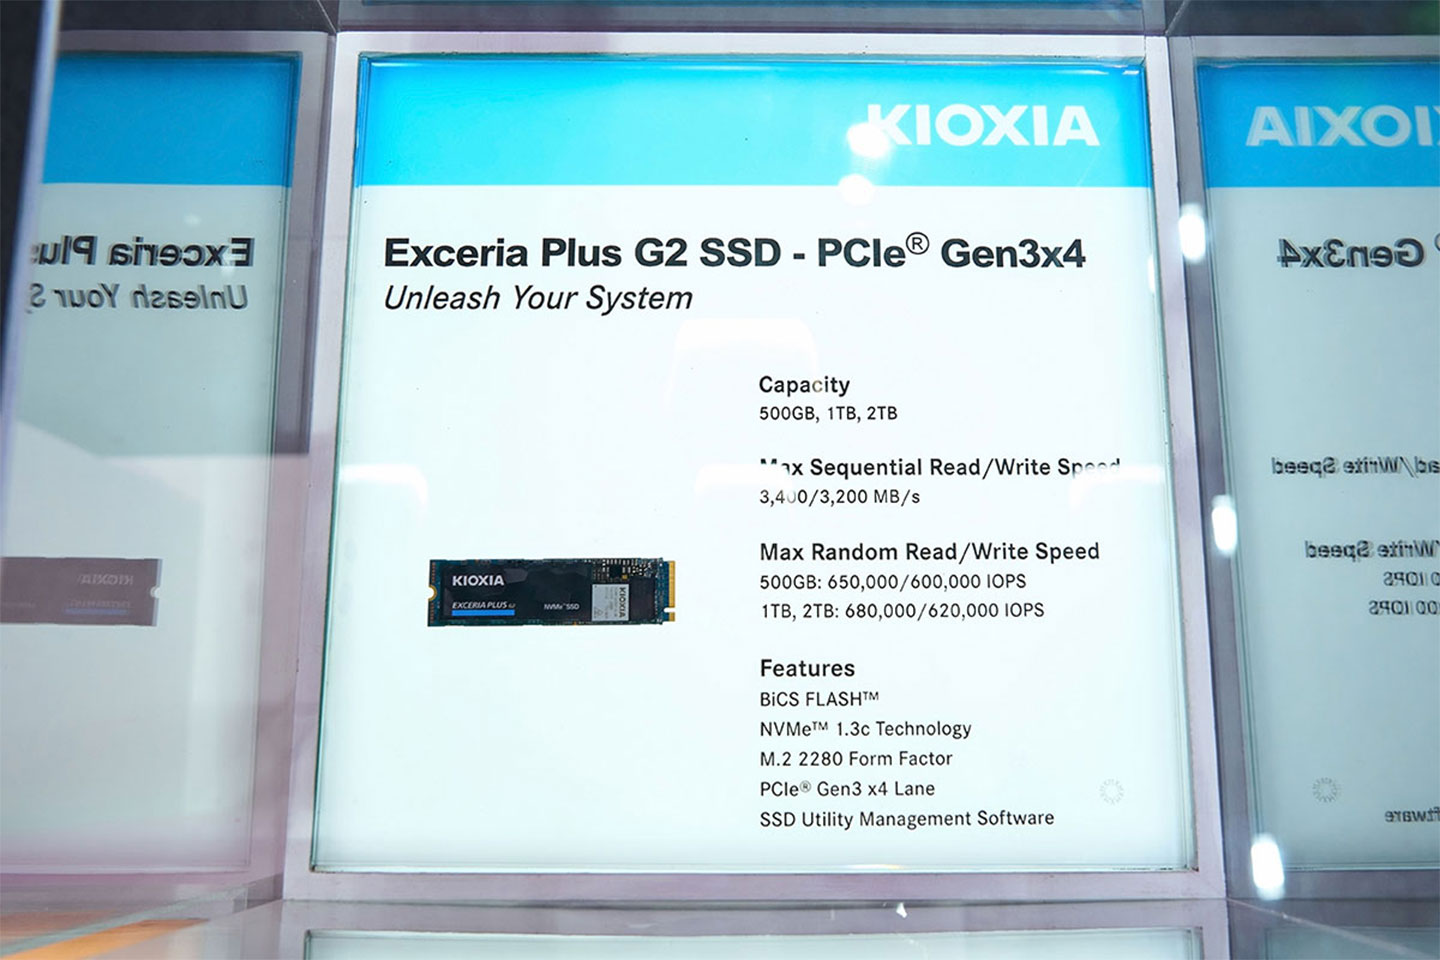 現場展出的 EXCEREIA PLUS G2 SSD 提供 PCIe Gen3 級的高效能，非常適合遊戲玩家與硬派電競用戶裝機使用。